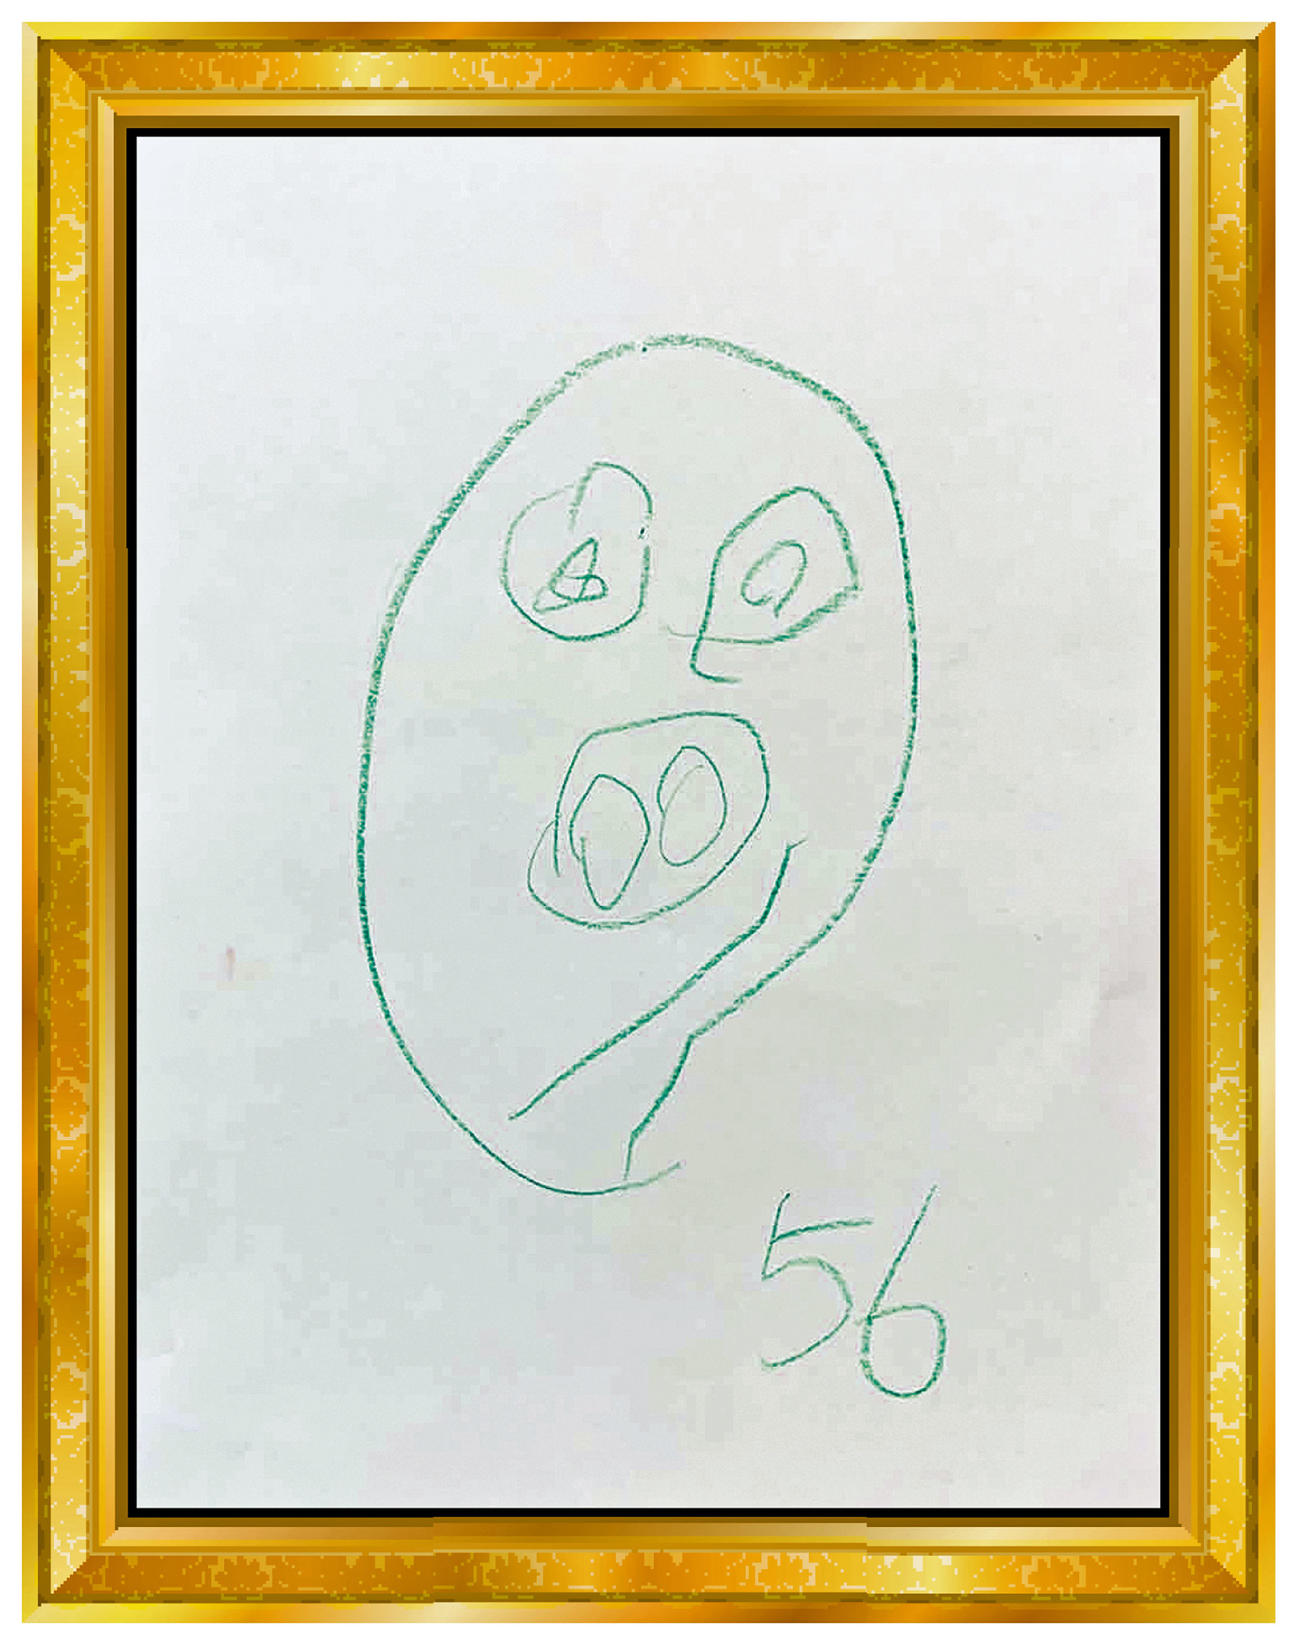 ソフトバンク嘉弥真4歳長男の描いた田浦の似顔絵